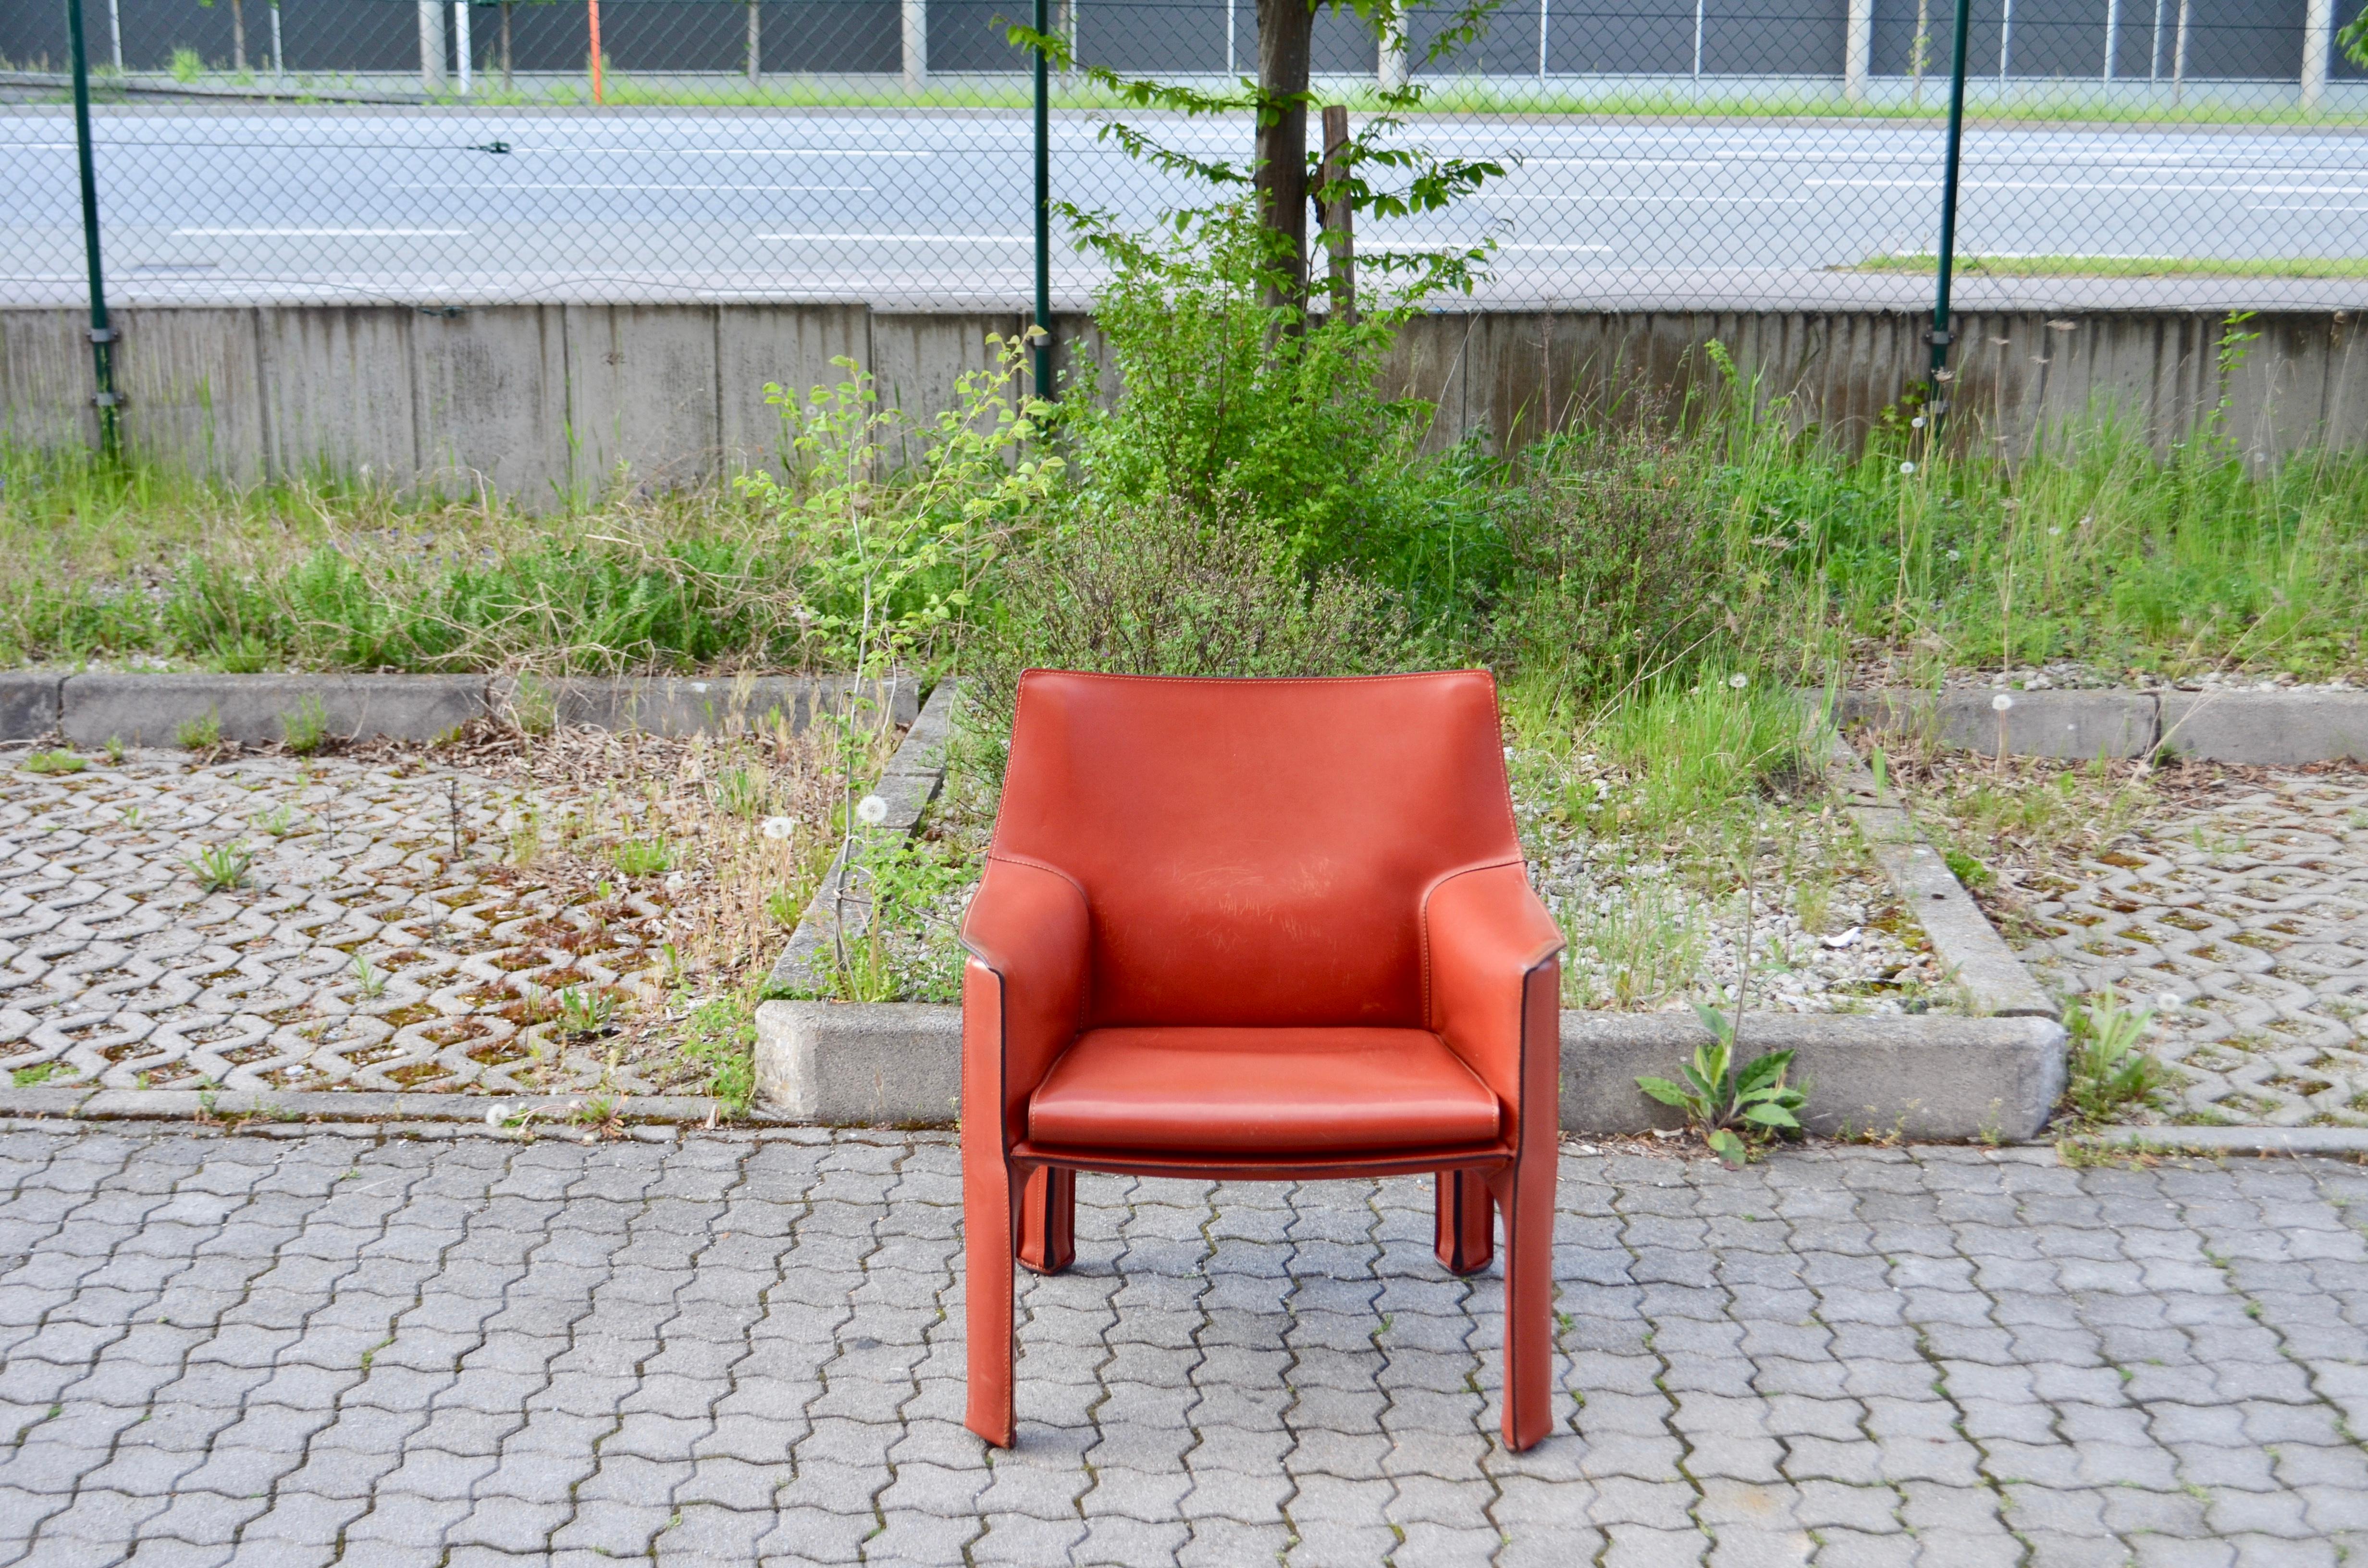 Der Sessel cab 414 wurde von Mario Bellini für den italienischen Hersteller Cassina entworfen.
Es ist die Sesselversion mit bequemer Sitzpolsterung.
Er ist mit dickem Sattelleder gepolstert, Farbe China rot / Ox rot

Wir haben 4 Cab Stühle in